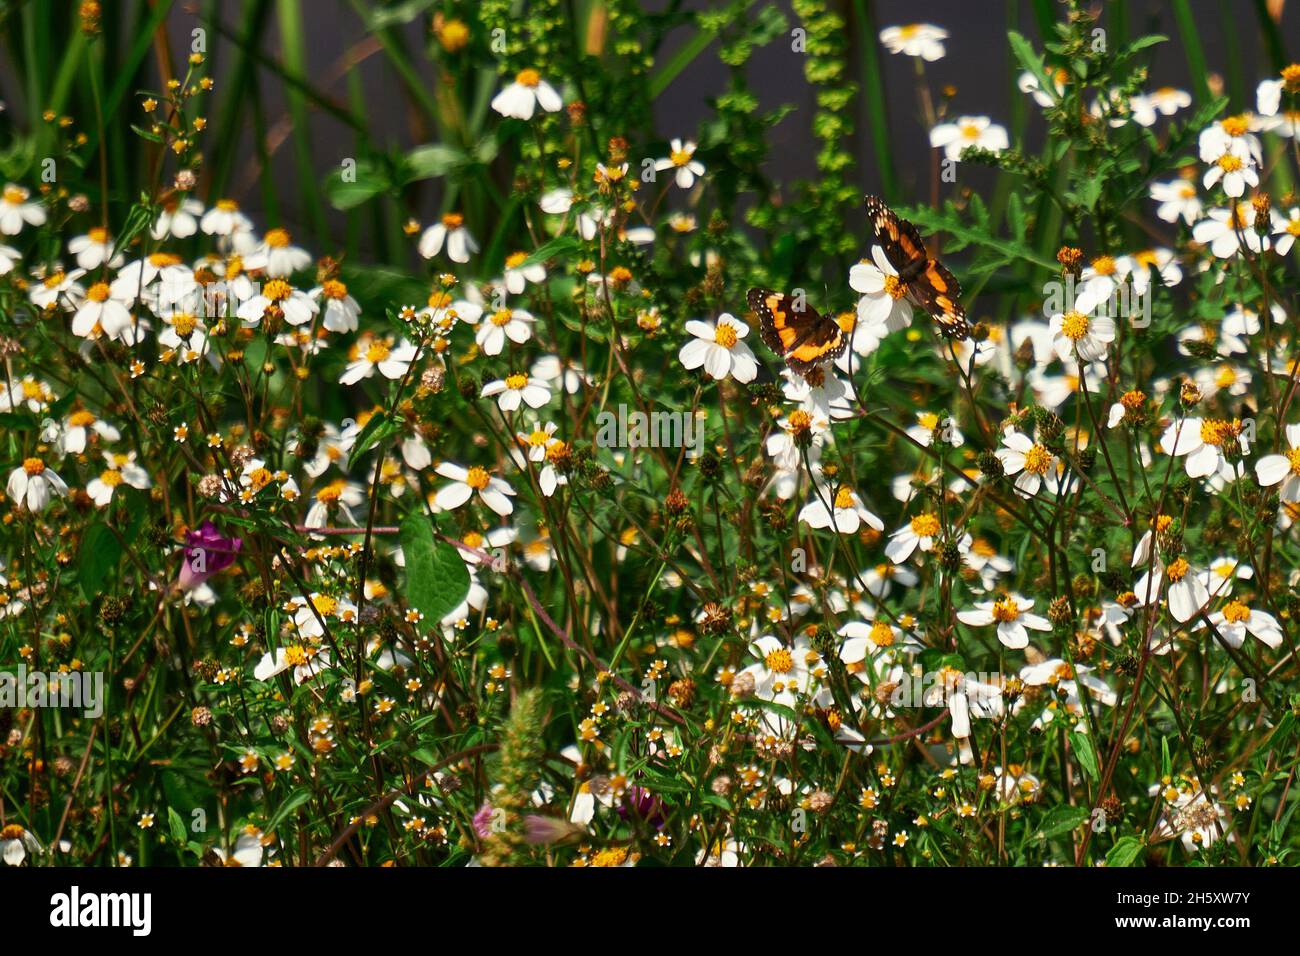 Selettivo di fiori a margherita e farfalle Foto Stock